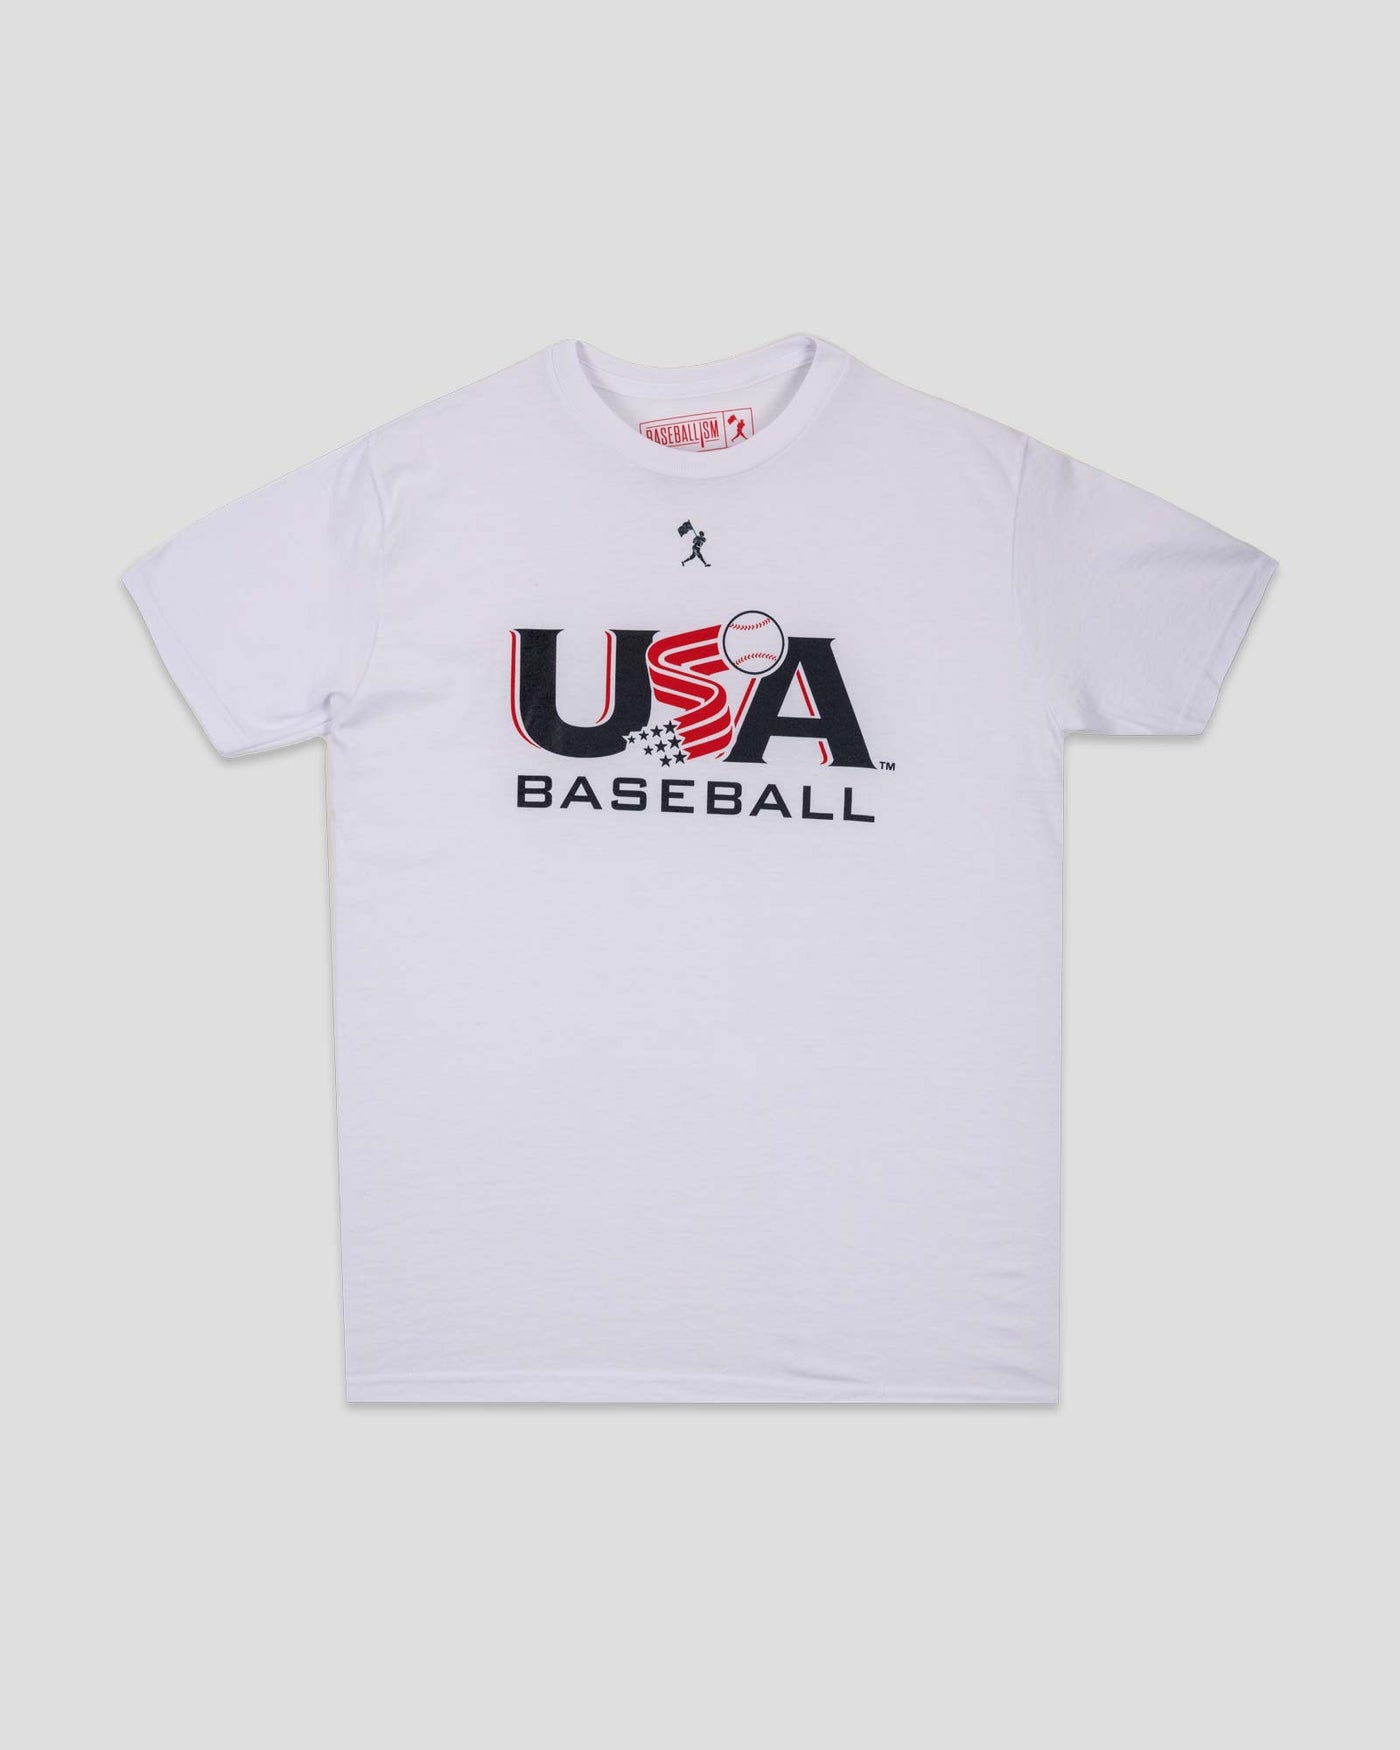 Baseballism x USA Baseball - Blanco 